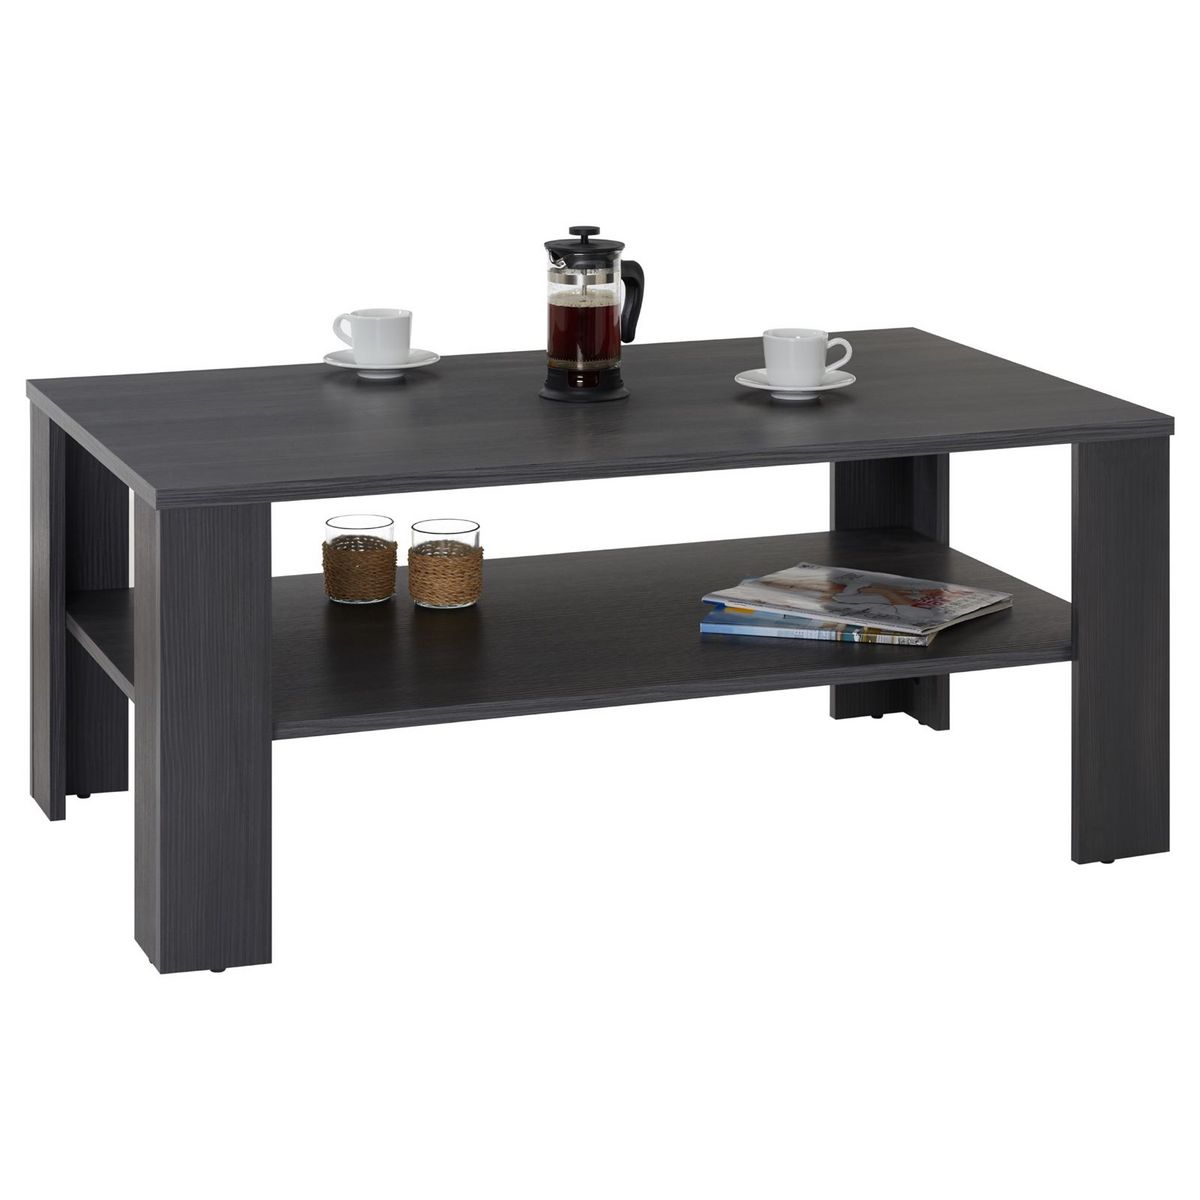 IDIMEX Table basse LORIENT, table de salon rectangulaire avec 1 étagère espace de rangement ouvert, en mélaminé décor bois gris cendré